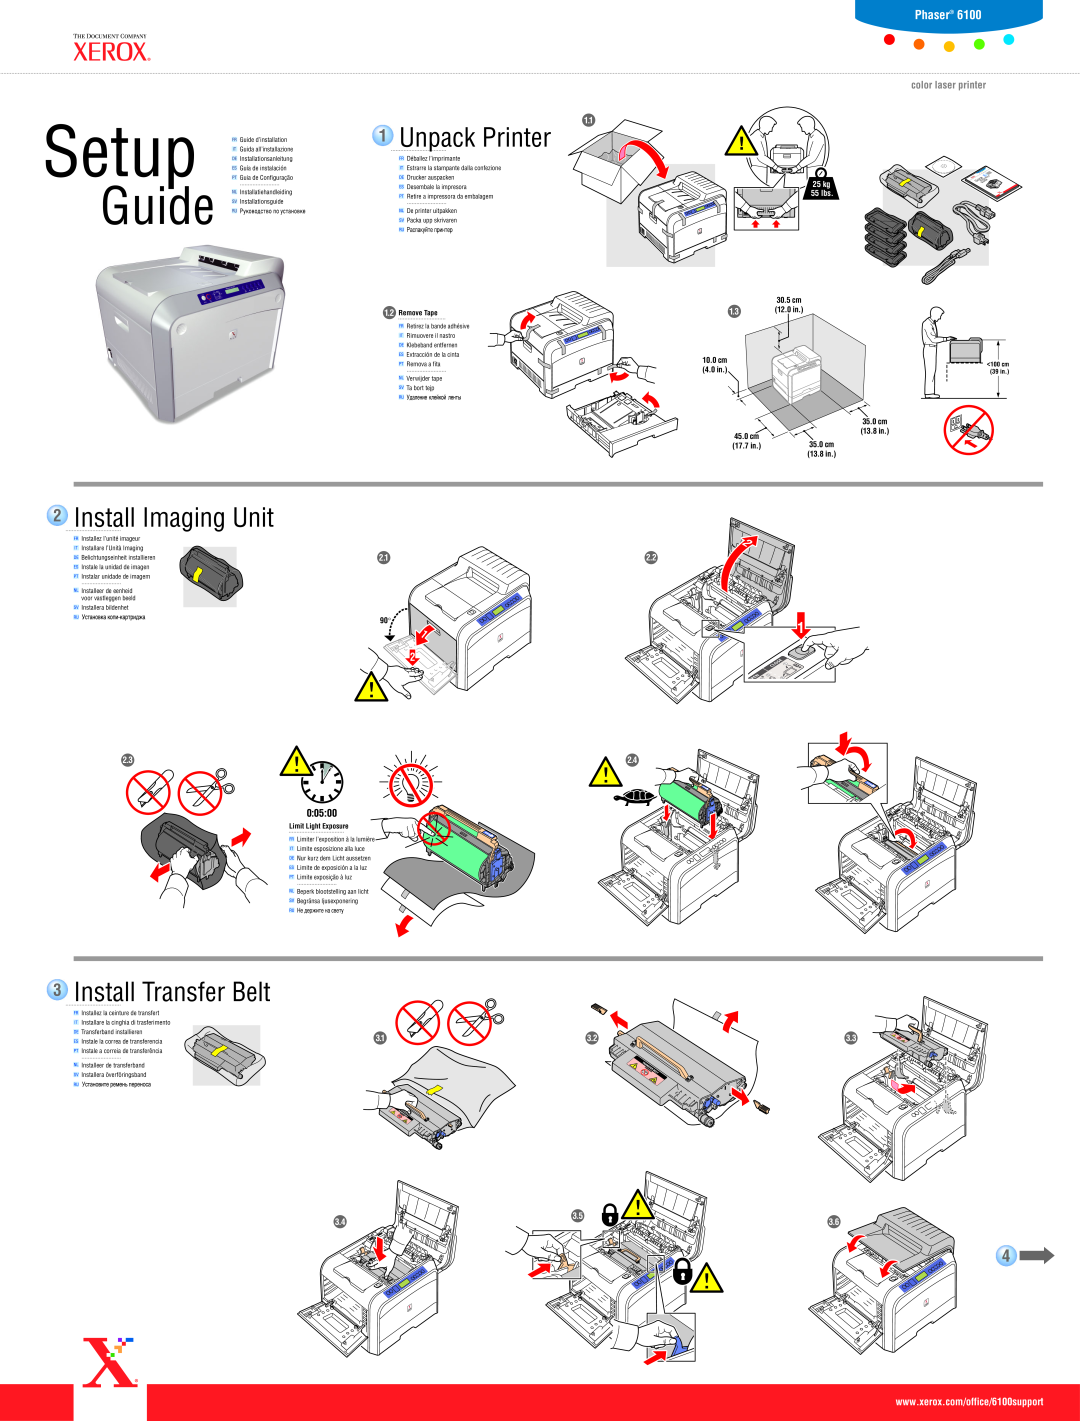 Xerox 6100 setup guide 2Install Imaging Unit, 3Install Transfer Belt, Setup, Guide, Unpack Printer, Phaser 